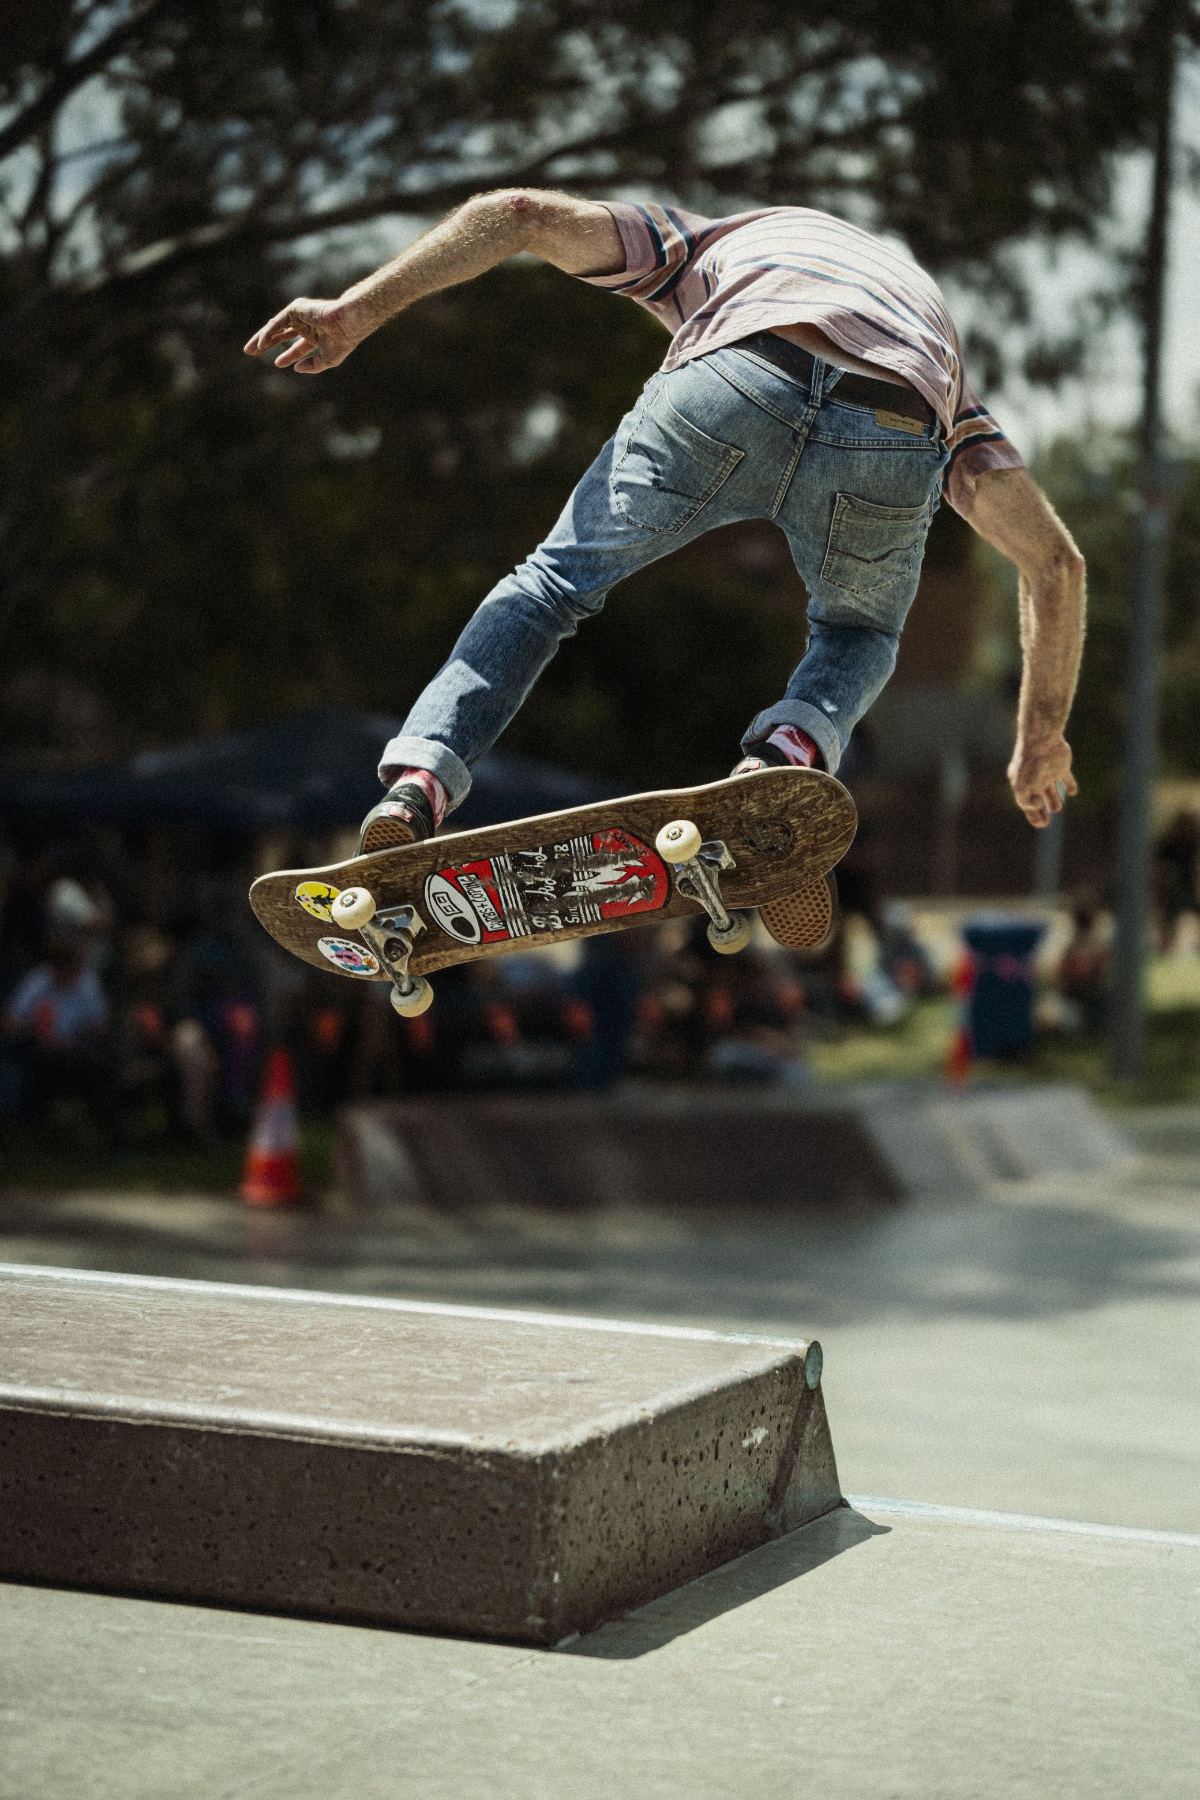 A skateboarder flies through the air.